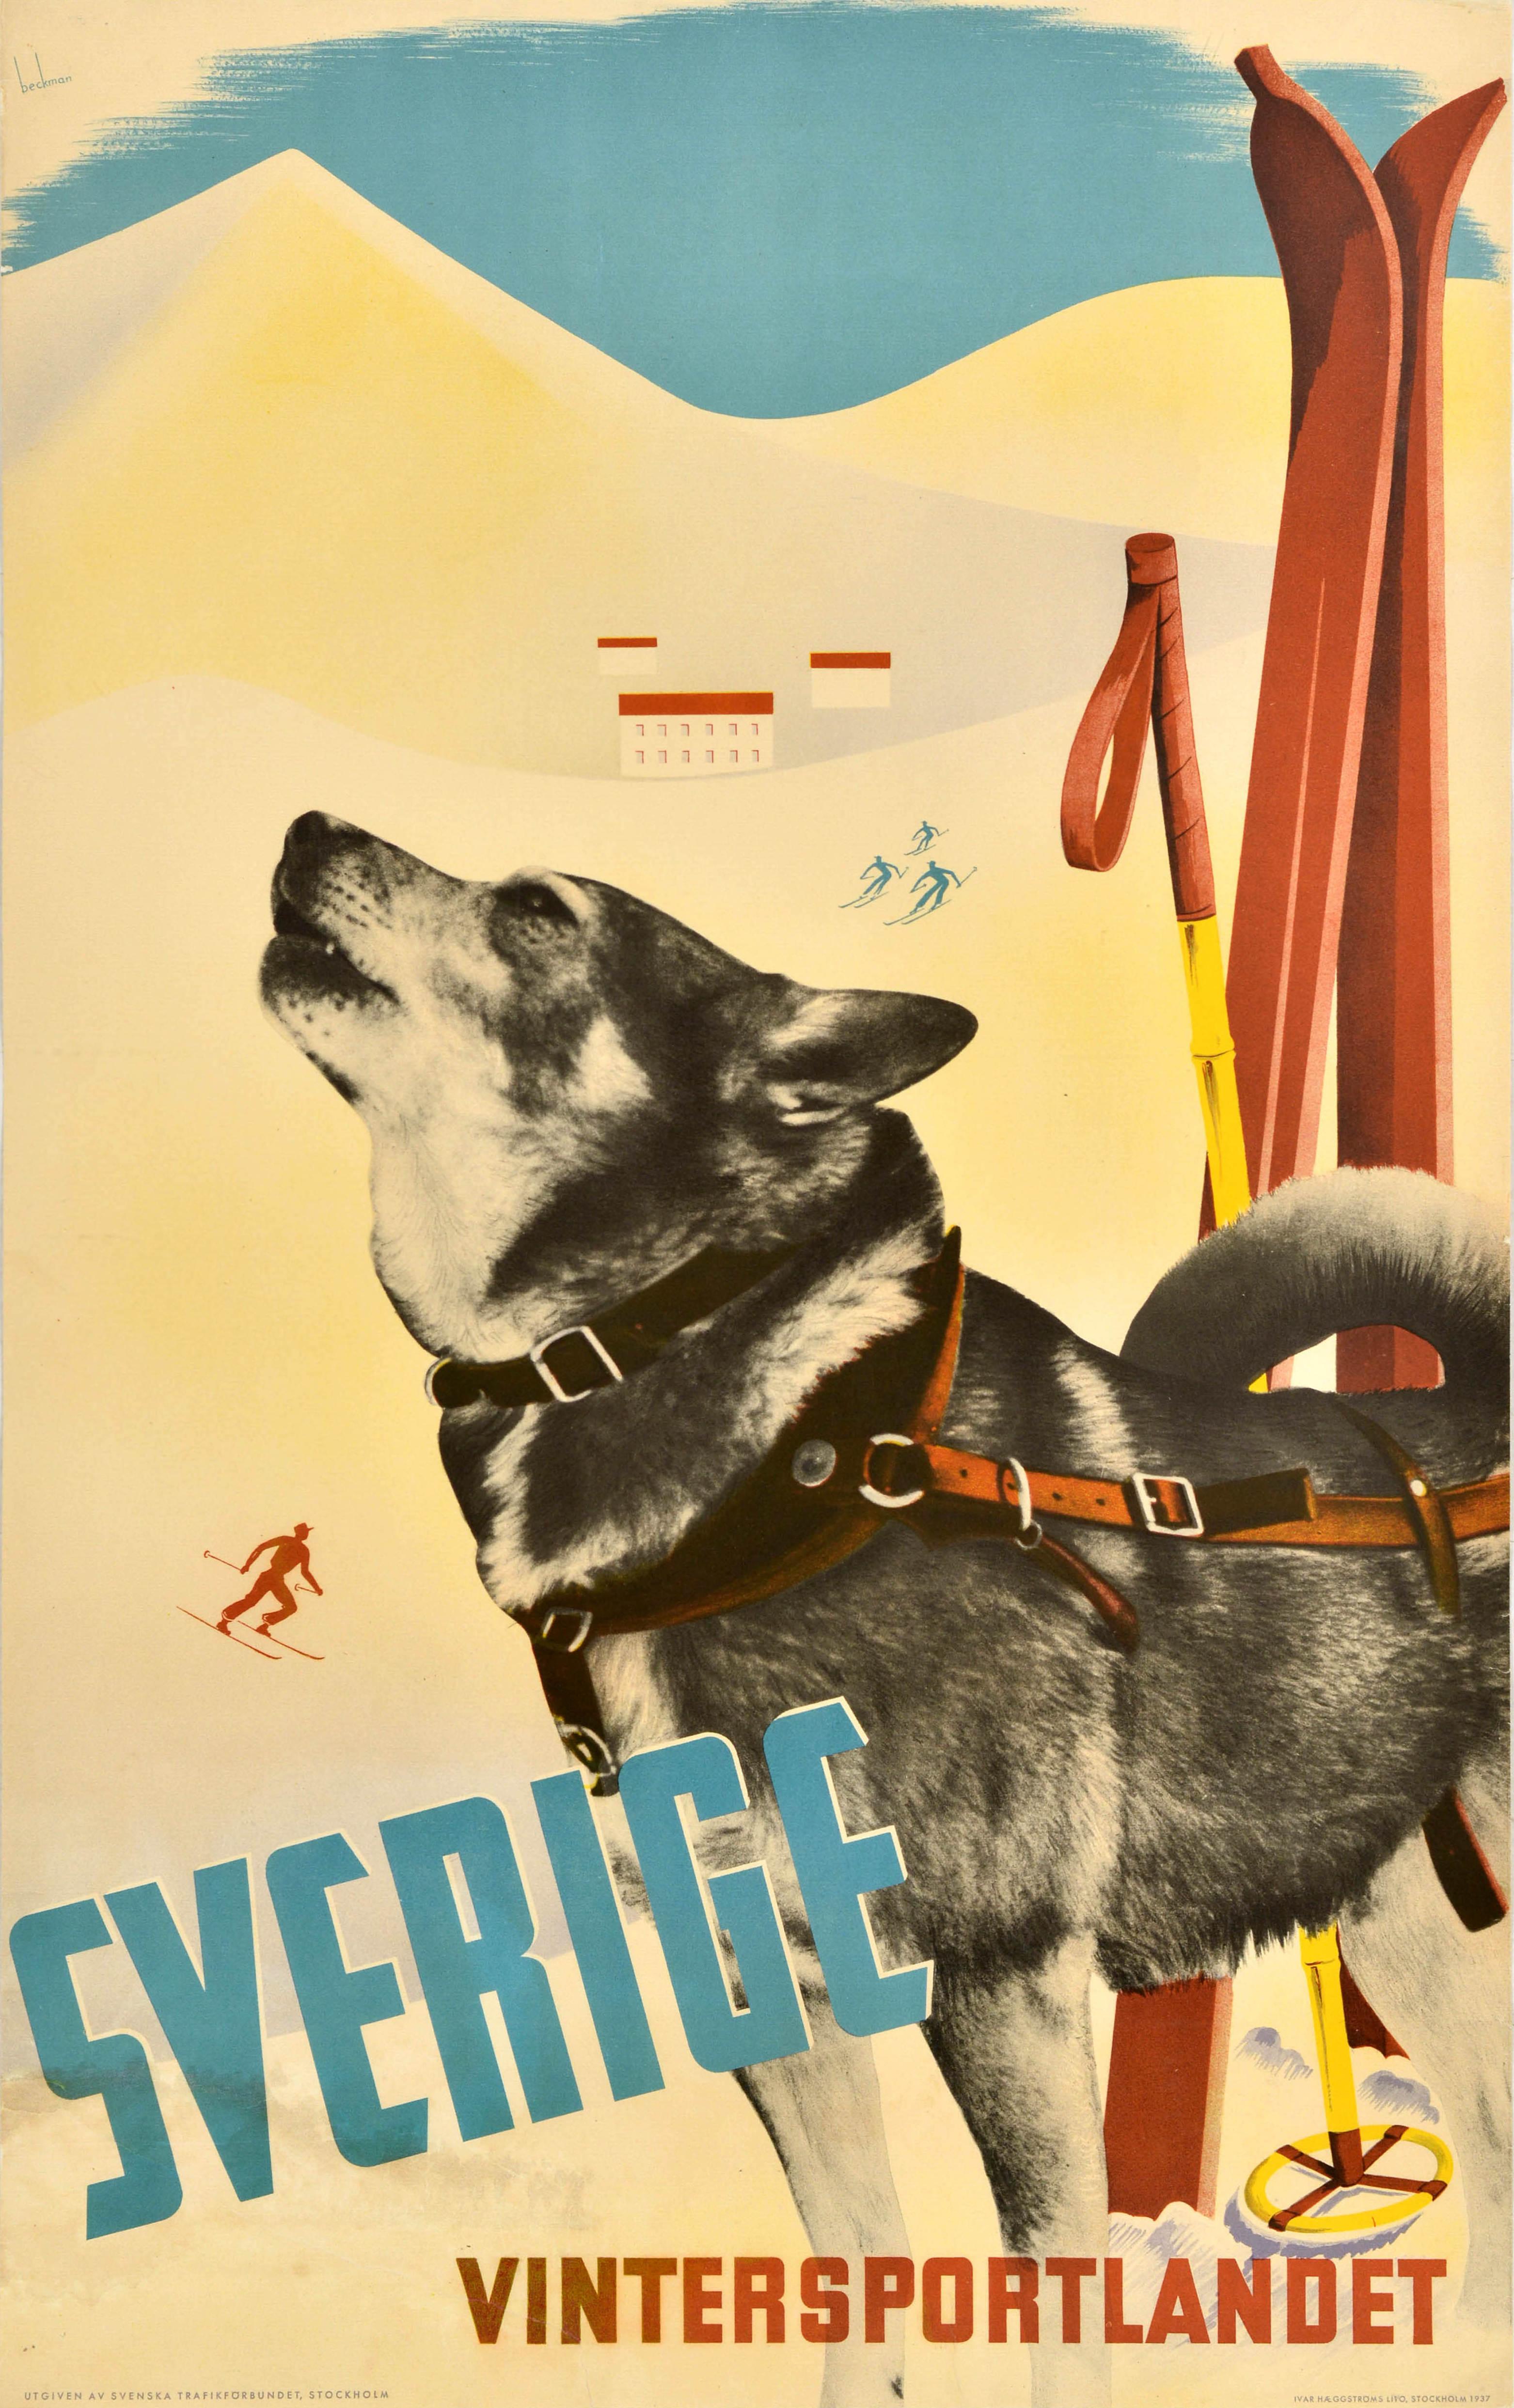 Anders Beckman Print - Original Vintage Ski Poster Sverige Vintersportlandet Sweden Winter Sports Dog